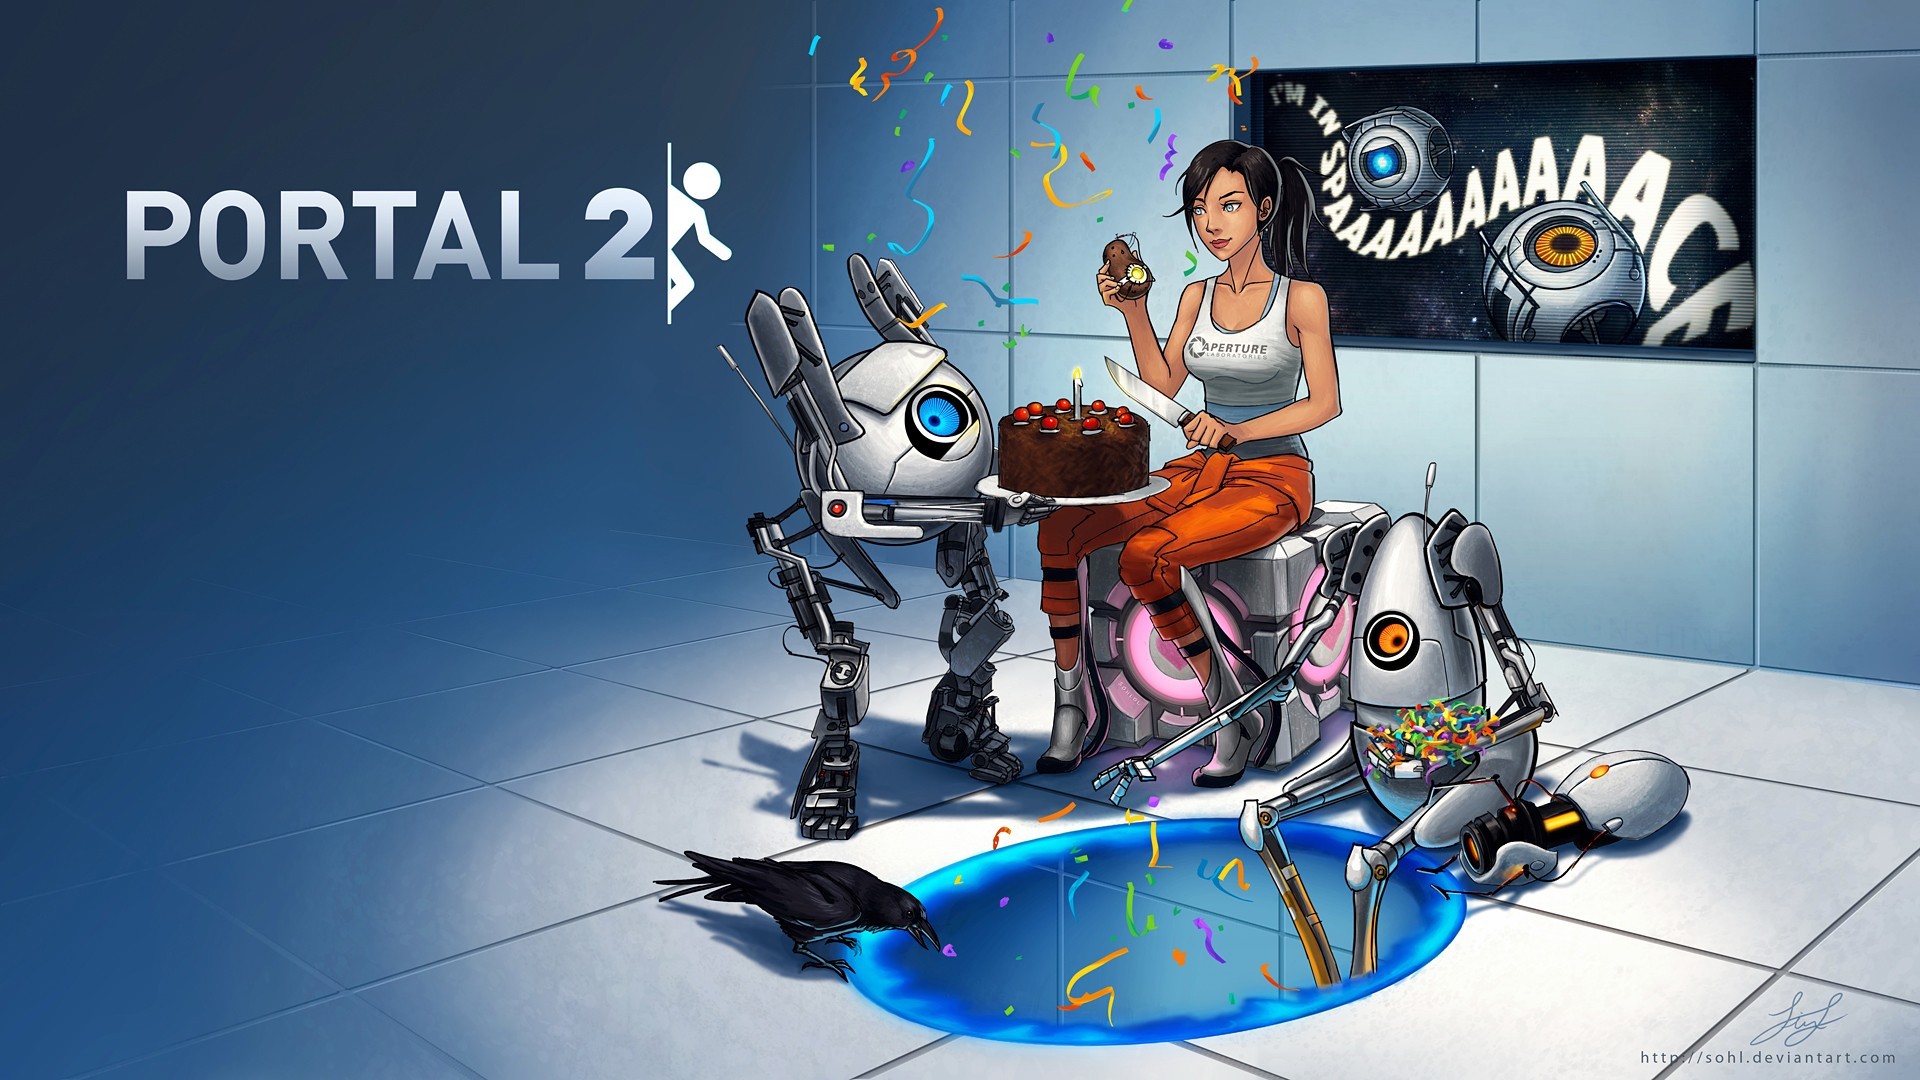 portal 2 release date